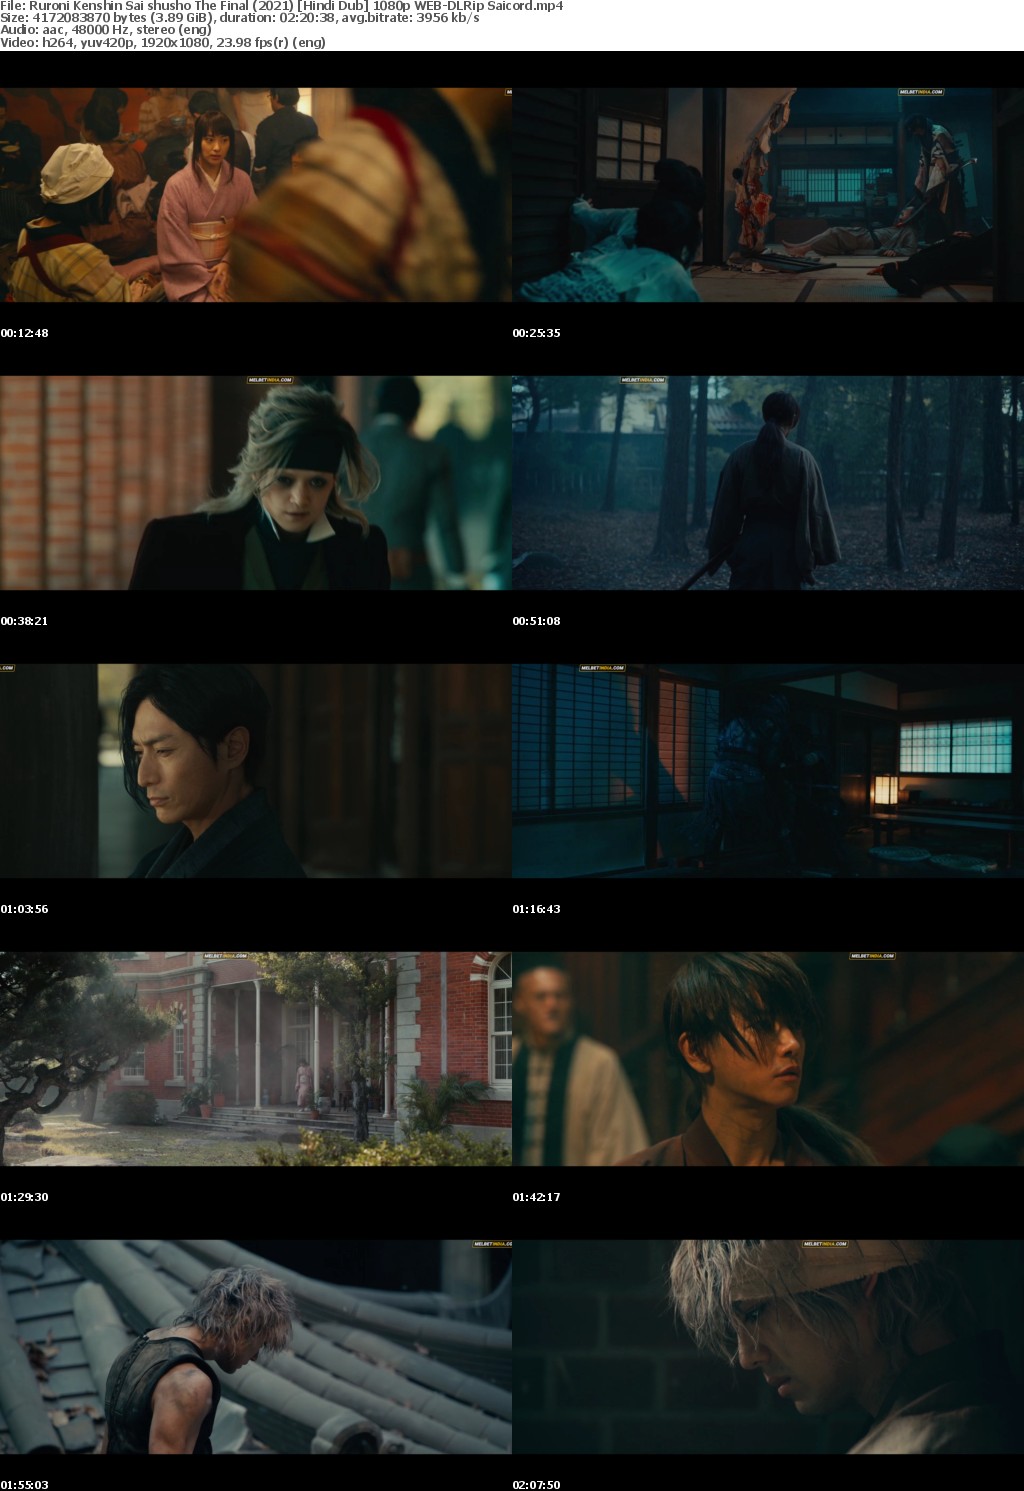 Rurouni Kenshin: The Final (Ruroni Kenshin: Sai shusho - The Final) (2021) Hindi Dub 1080p WEB-DLRip Saicord